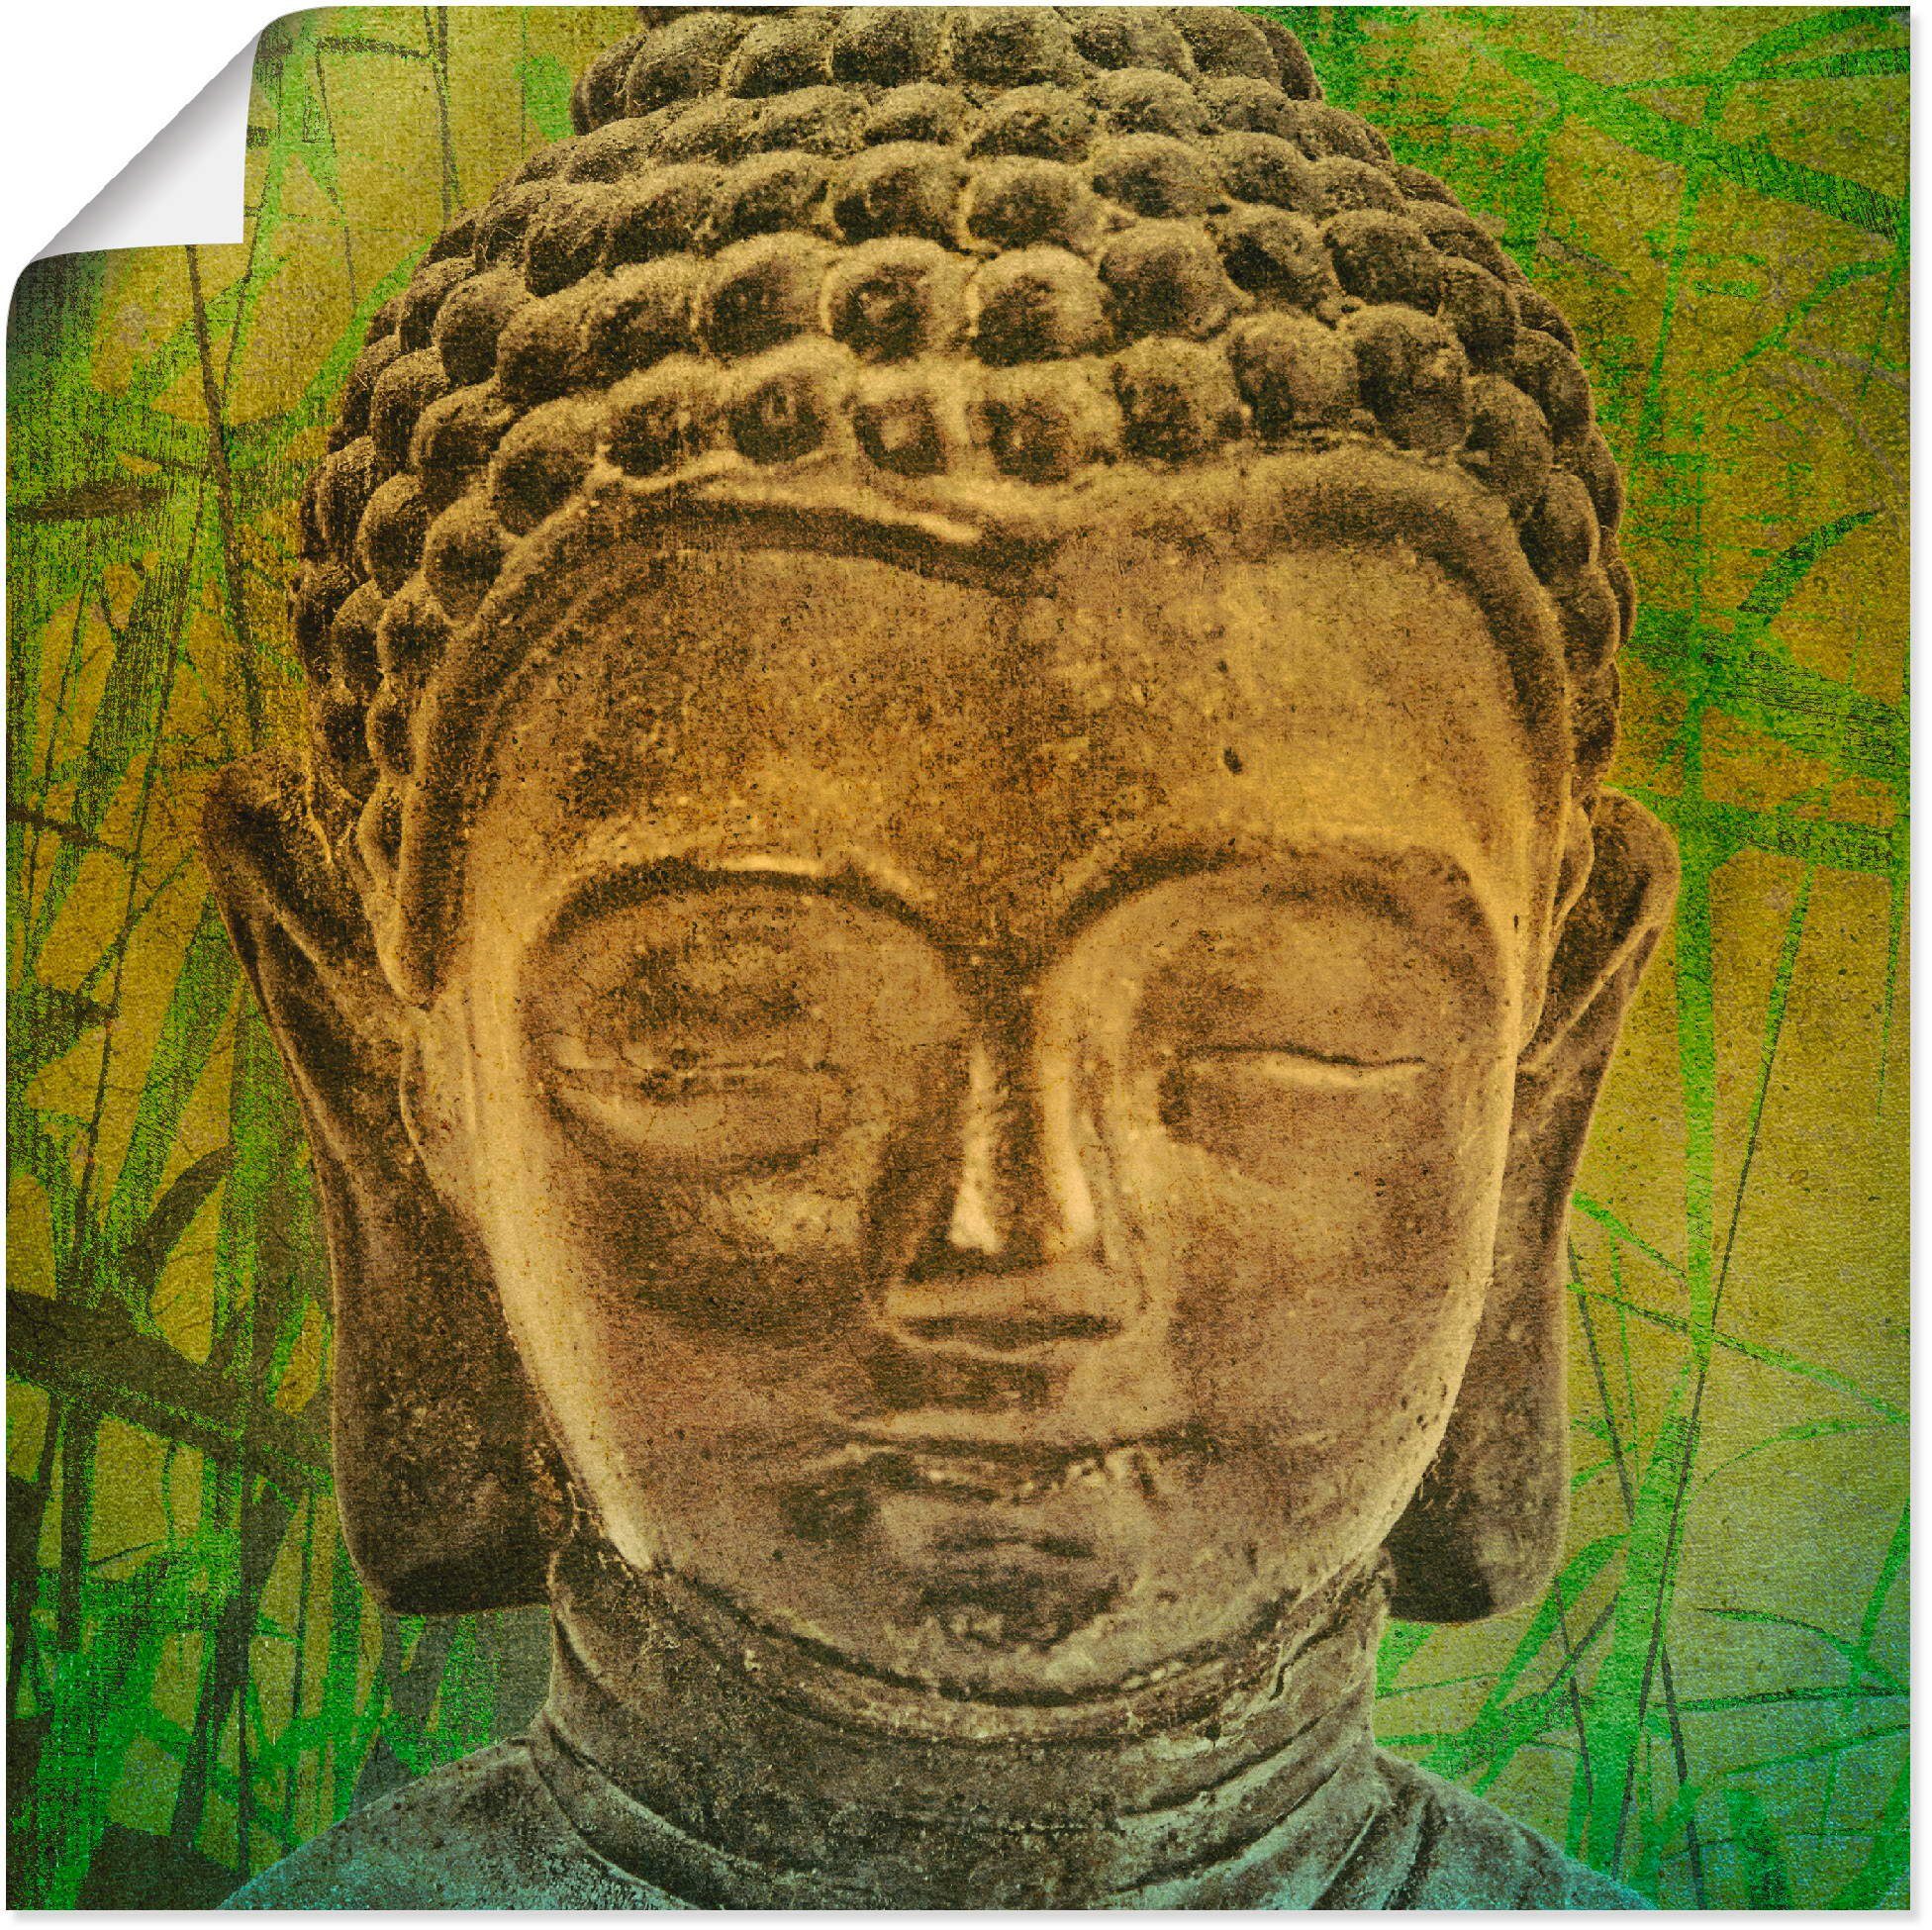 Artland Wandbild Buddha II, Religion (1 St), als Leinwandbild, Poster in verschied. Größen